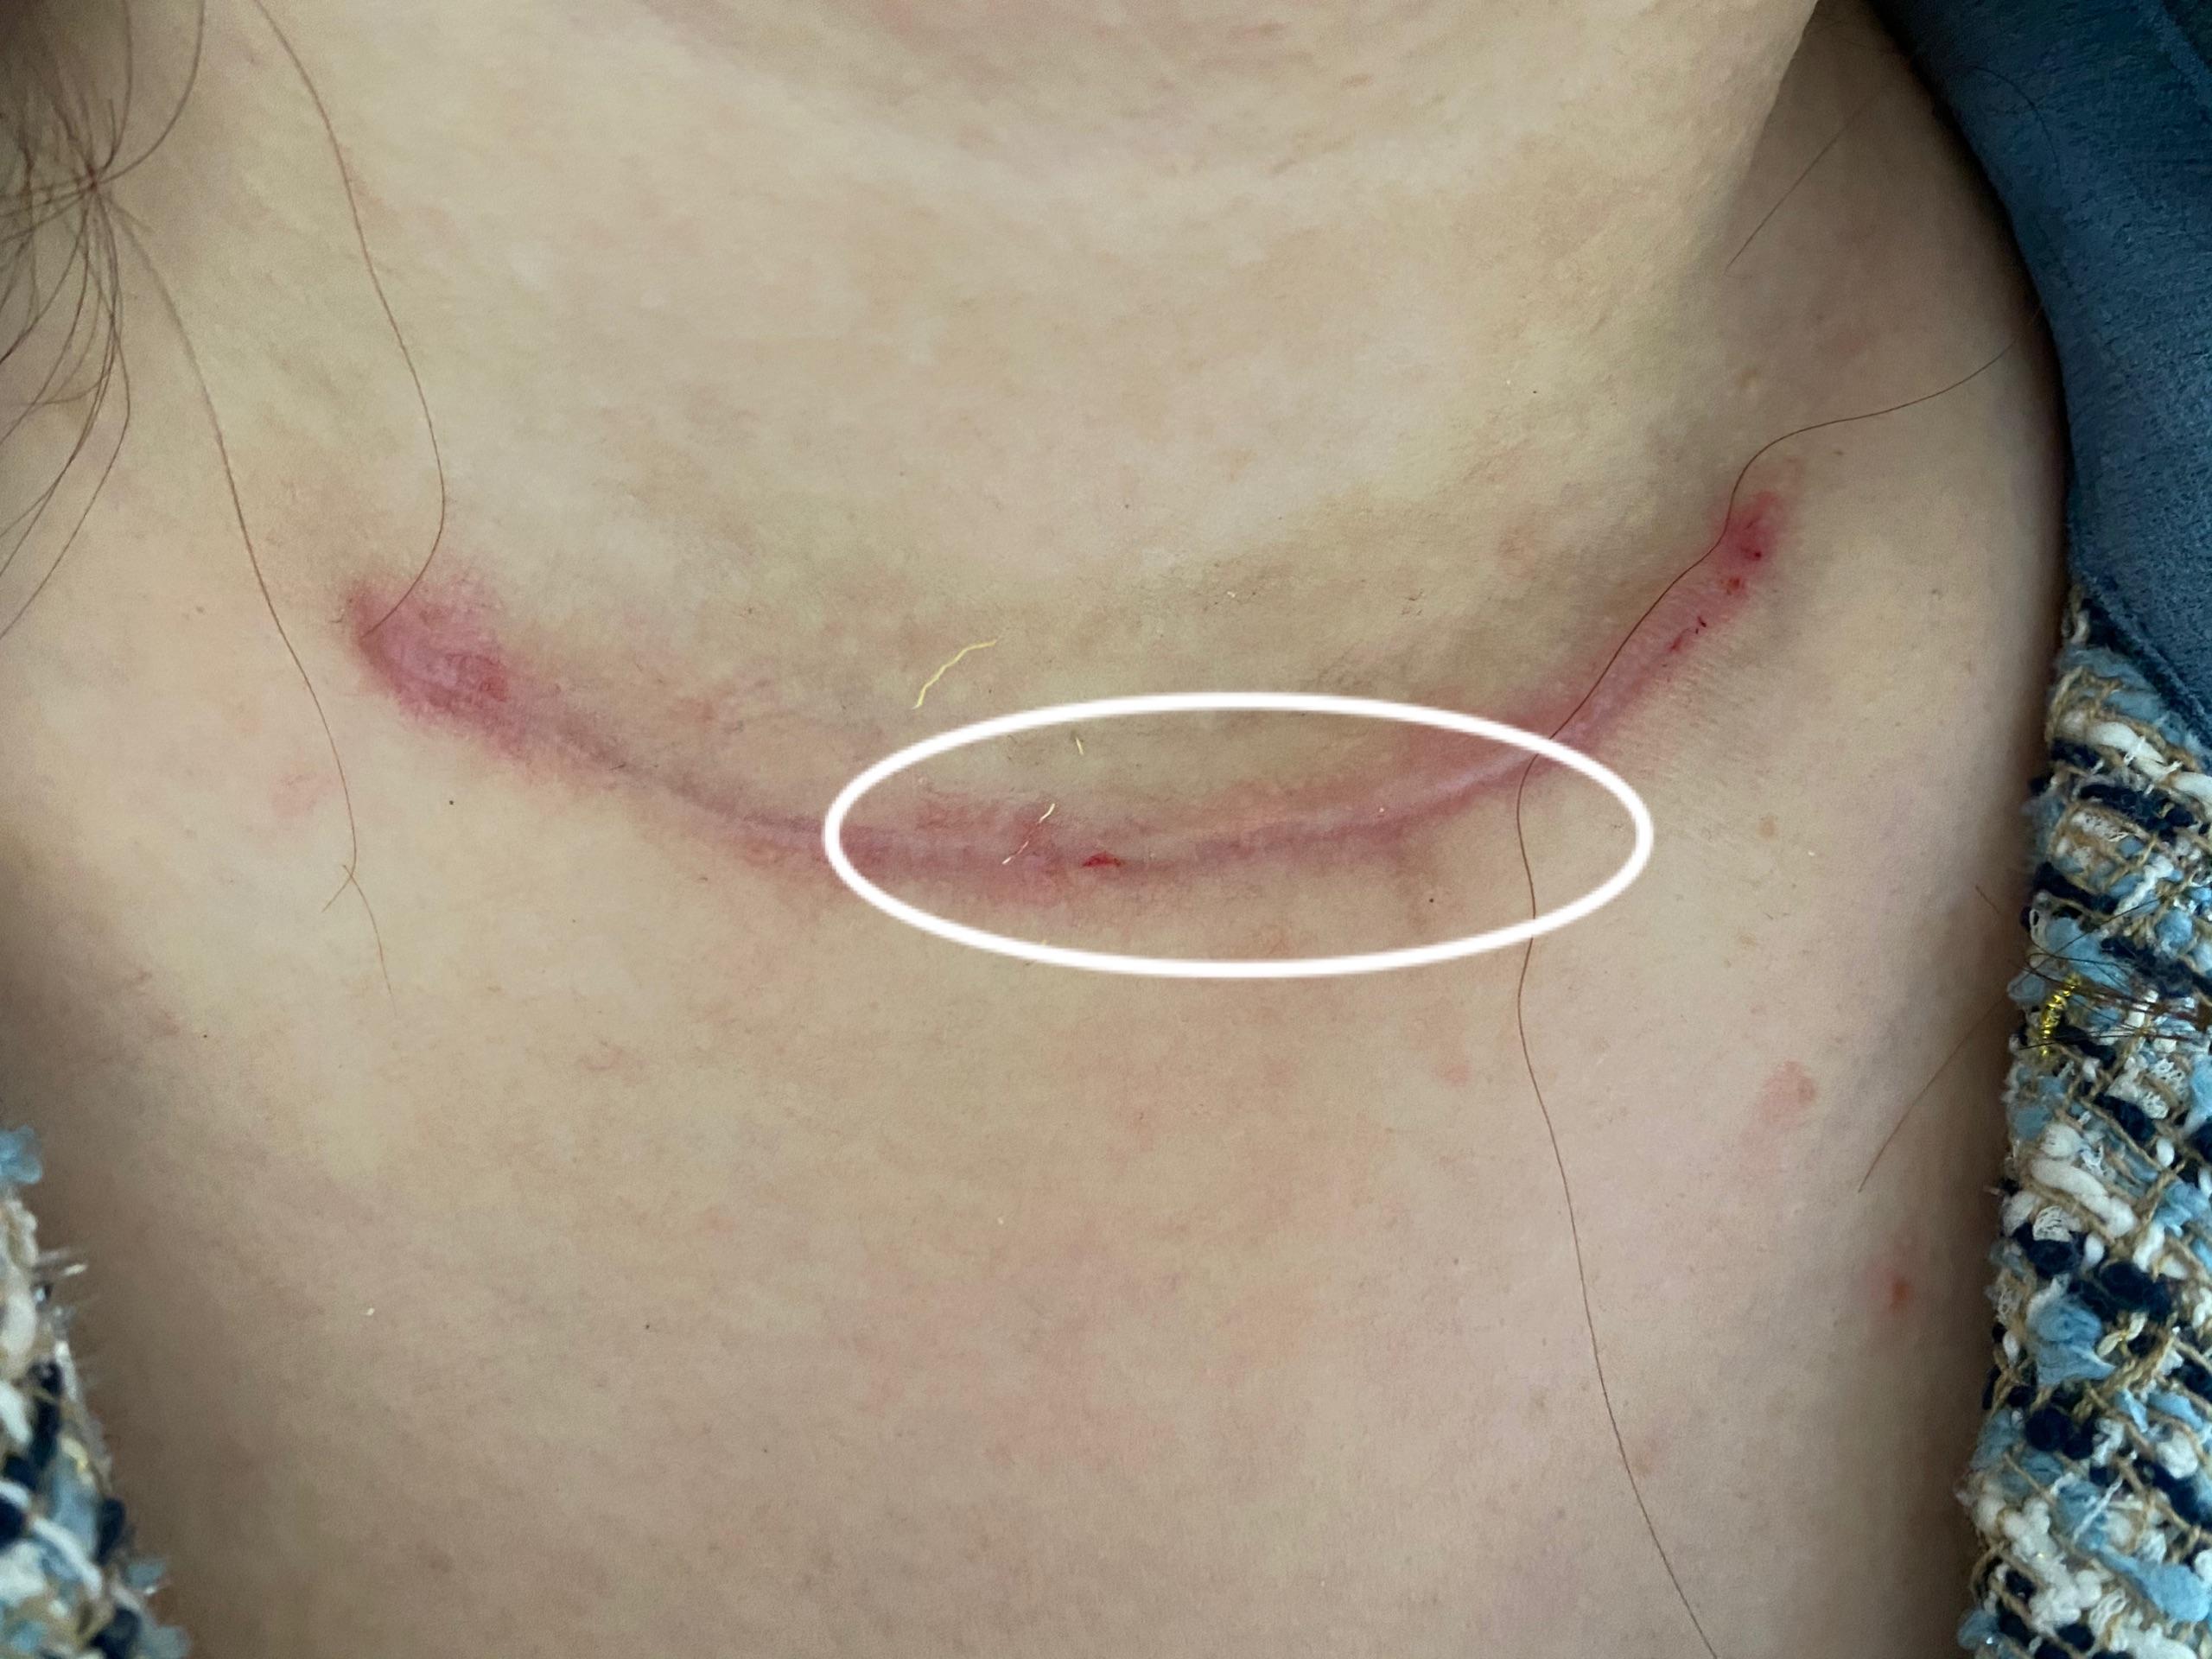 甲状腺癌手术刀疤图图片